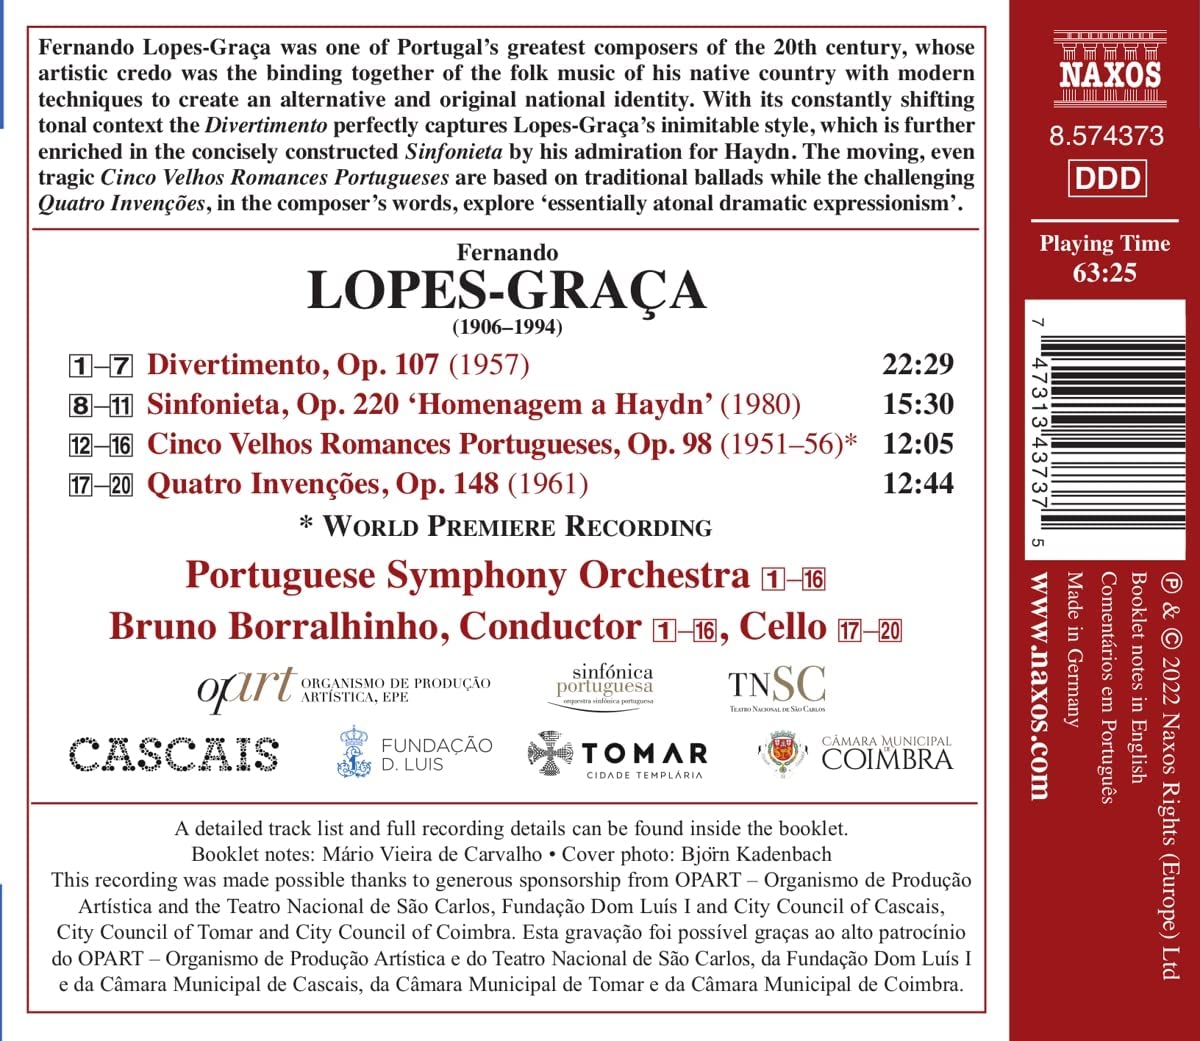 페르난도 로페스-그라차: 디베르티멘토, 신포니에타, 5개의 옛 포르투갈 로망스, 4개의 인벤션 (Fernando Lopes-Graca: Orchestral Works)